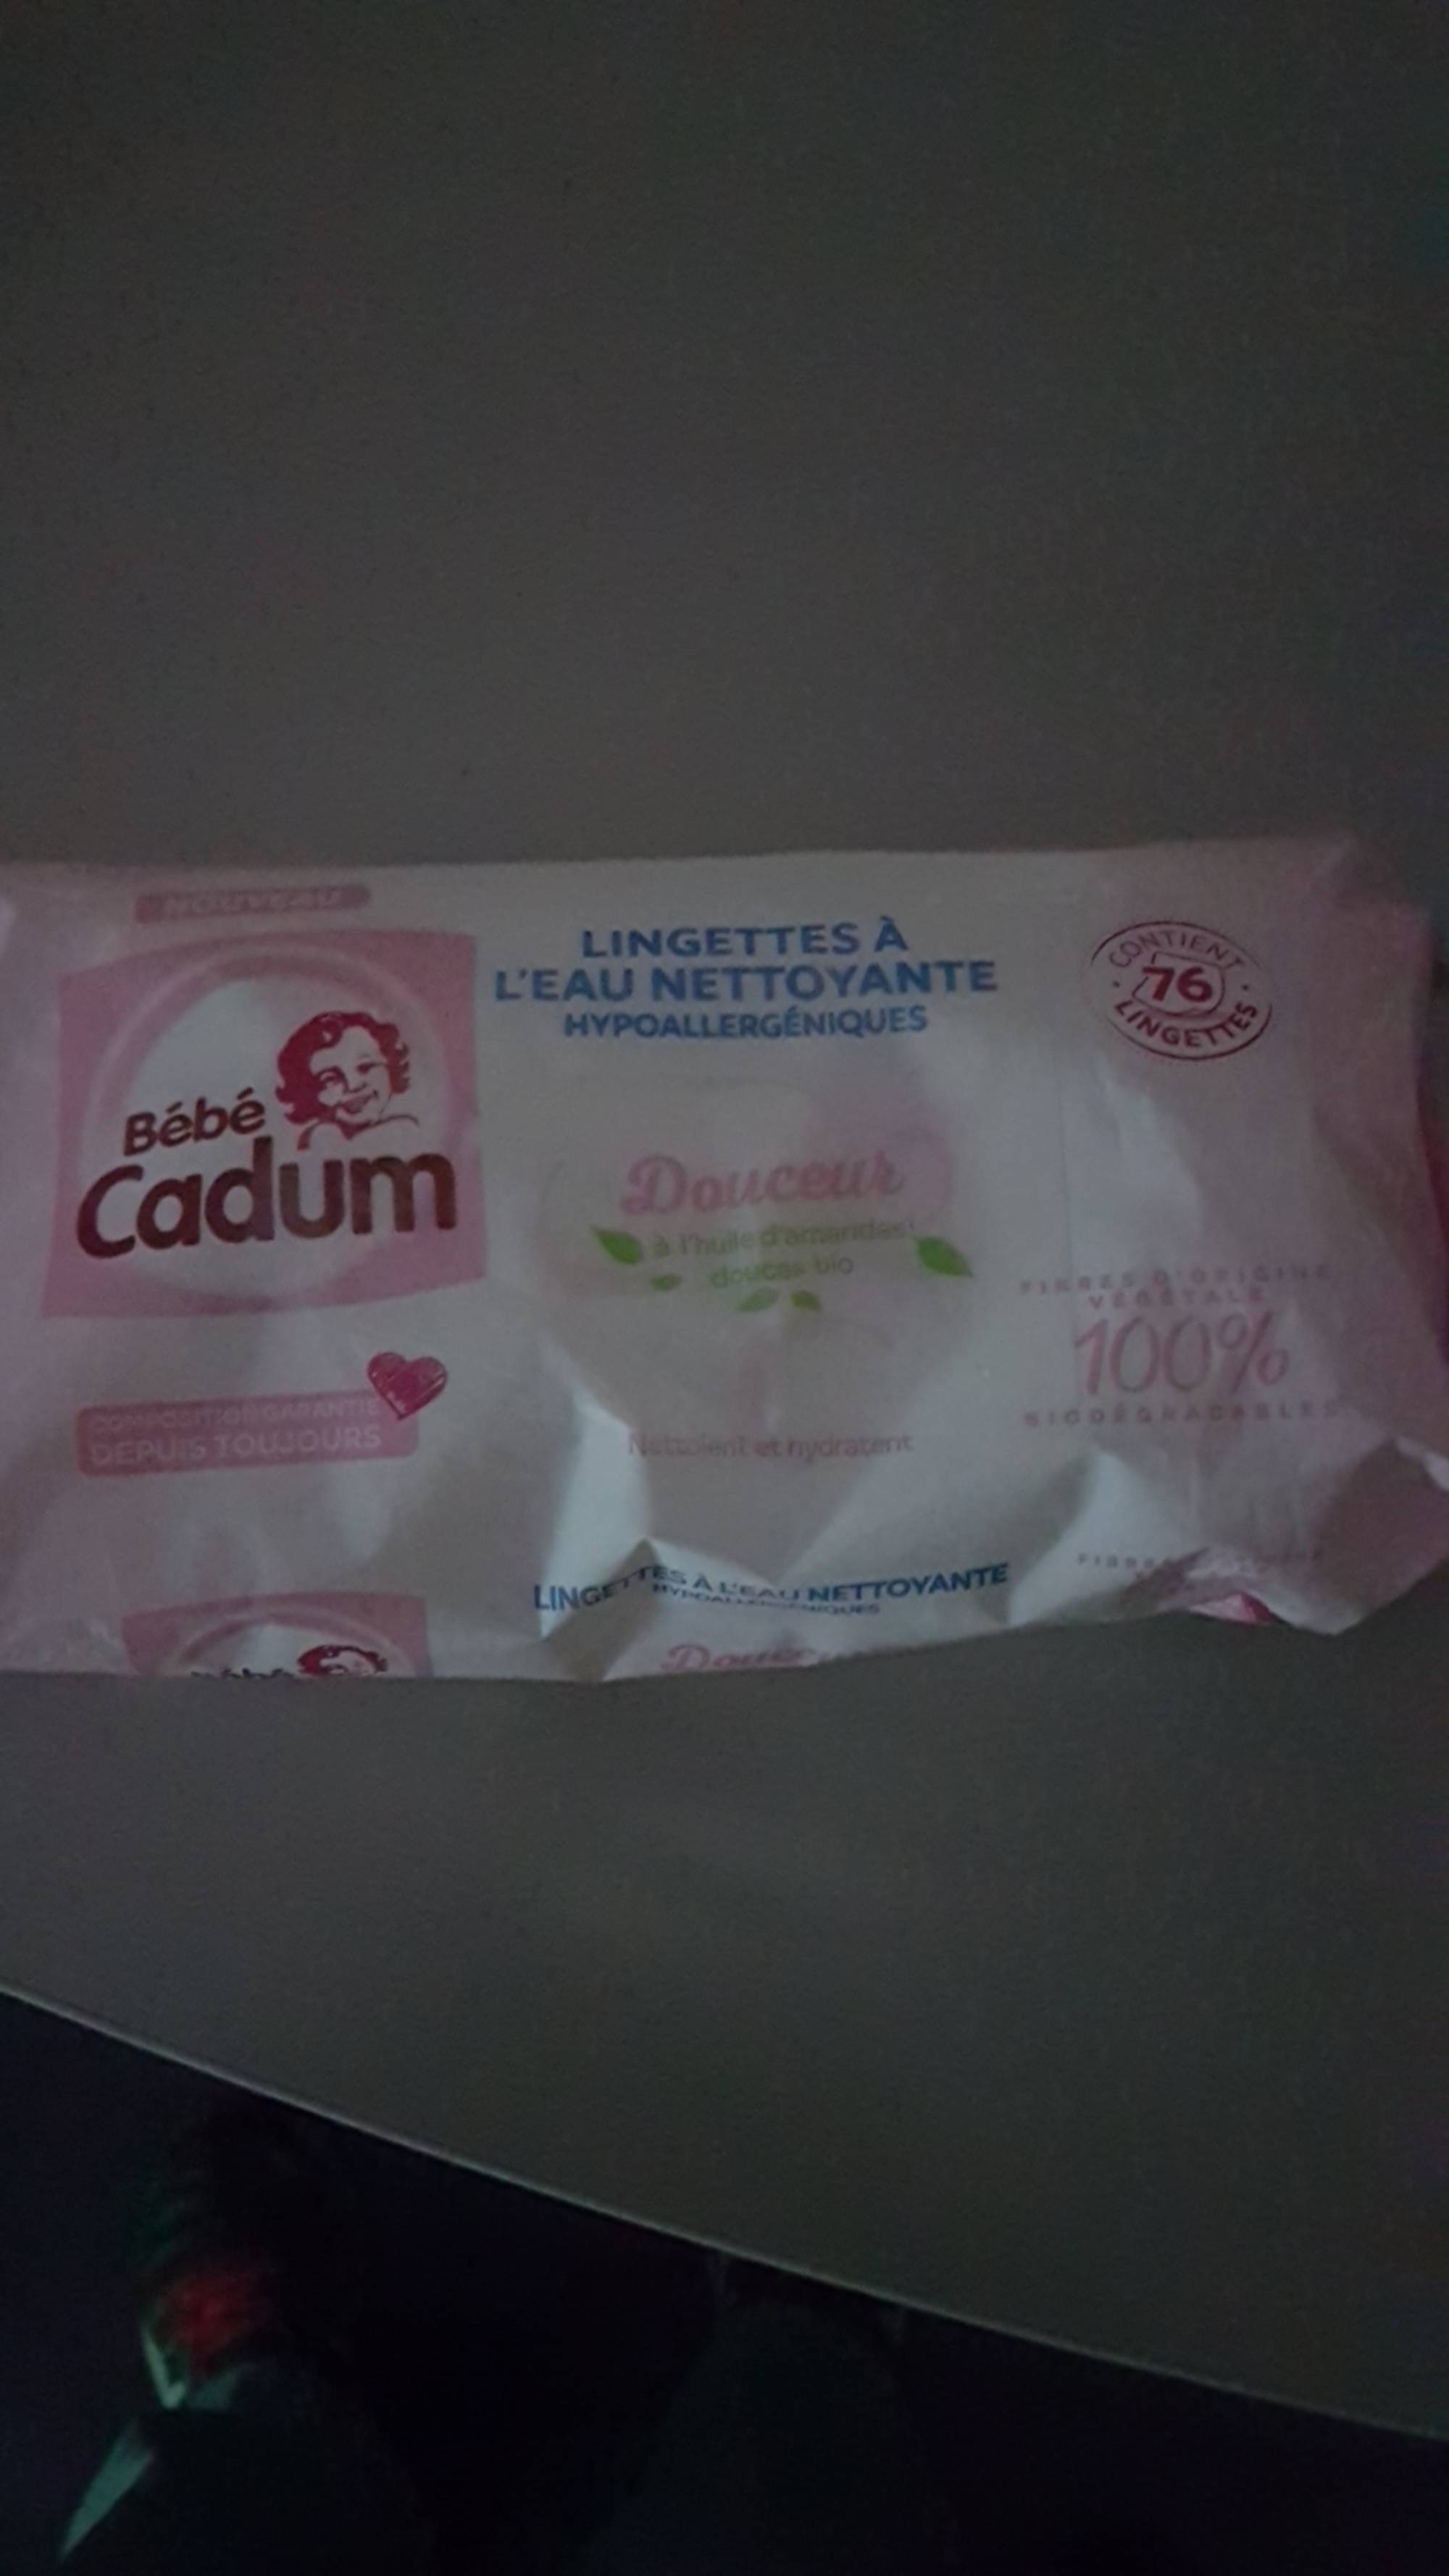 CADUM - Bébé cadum - Lingettes à l'eau nettoyante hypoallergéniques